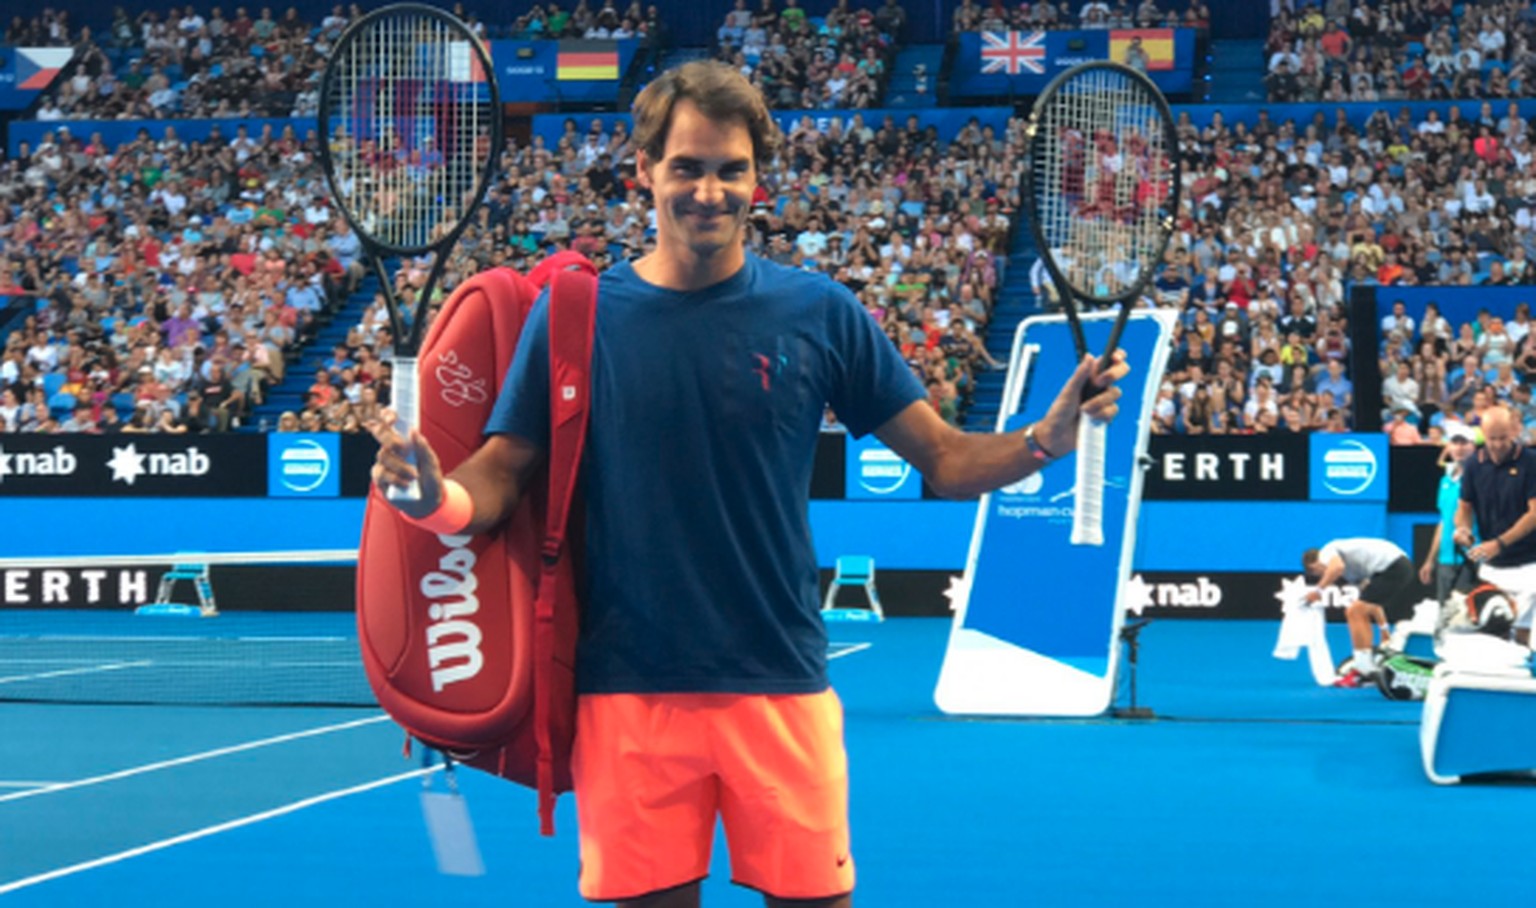 Unübersehbar: Roger Federer ist wieder da.